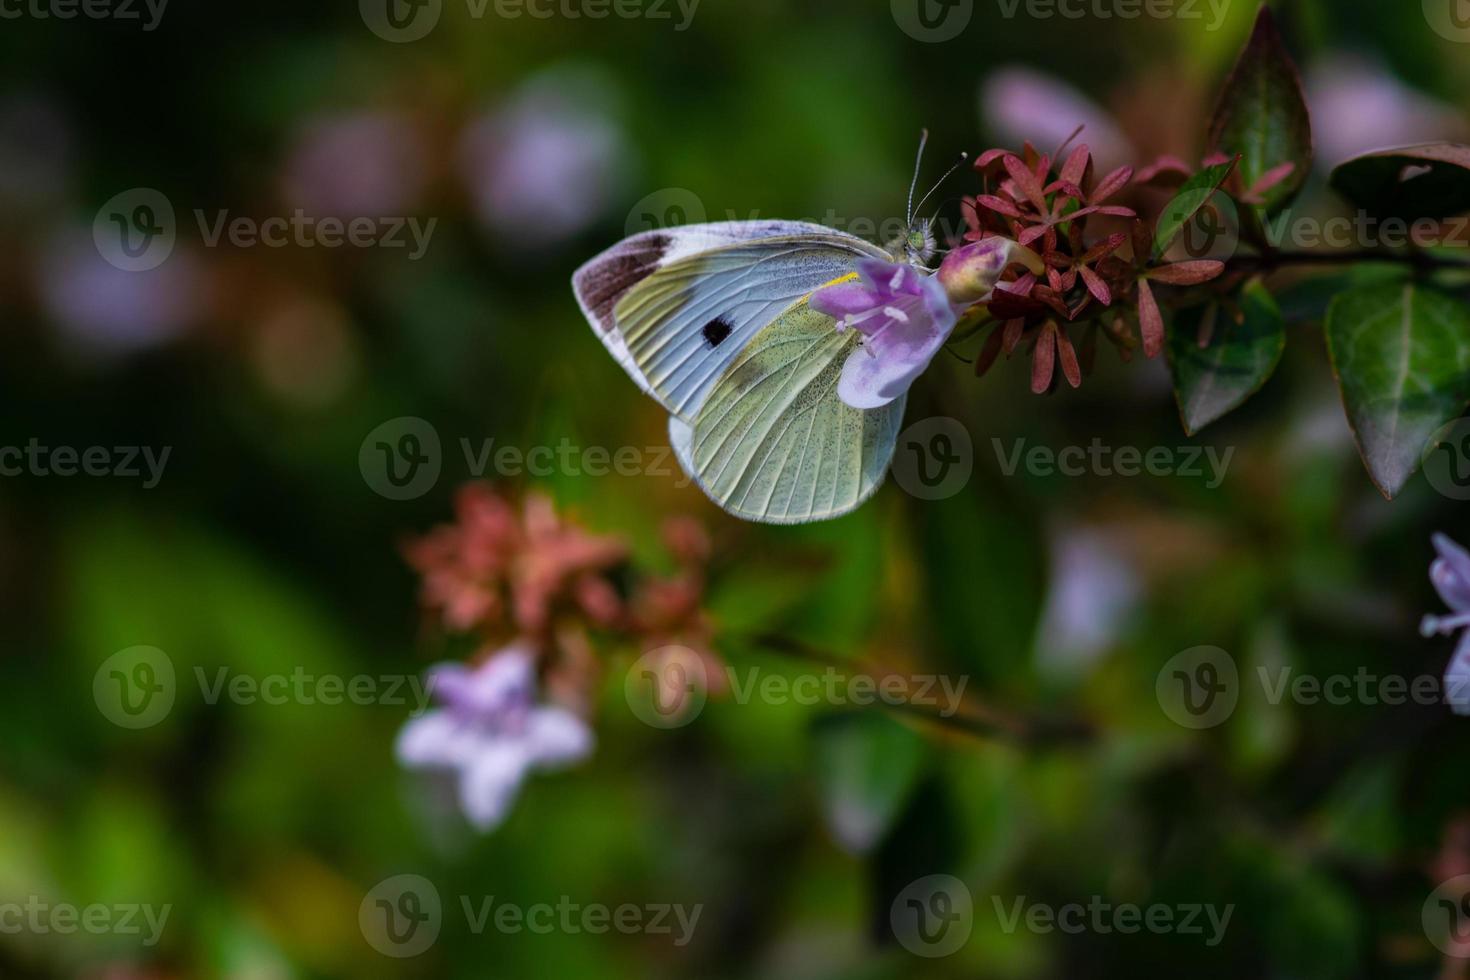 prachtige vlinder op de bloem in een tuin foto